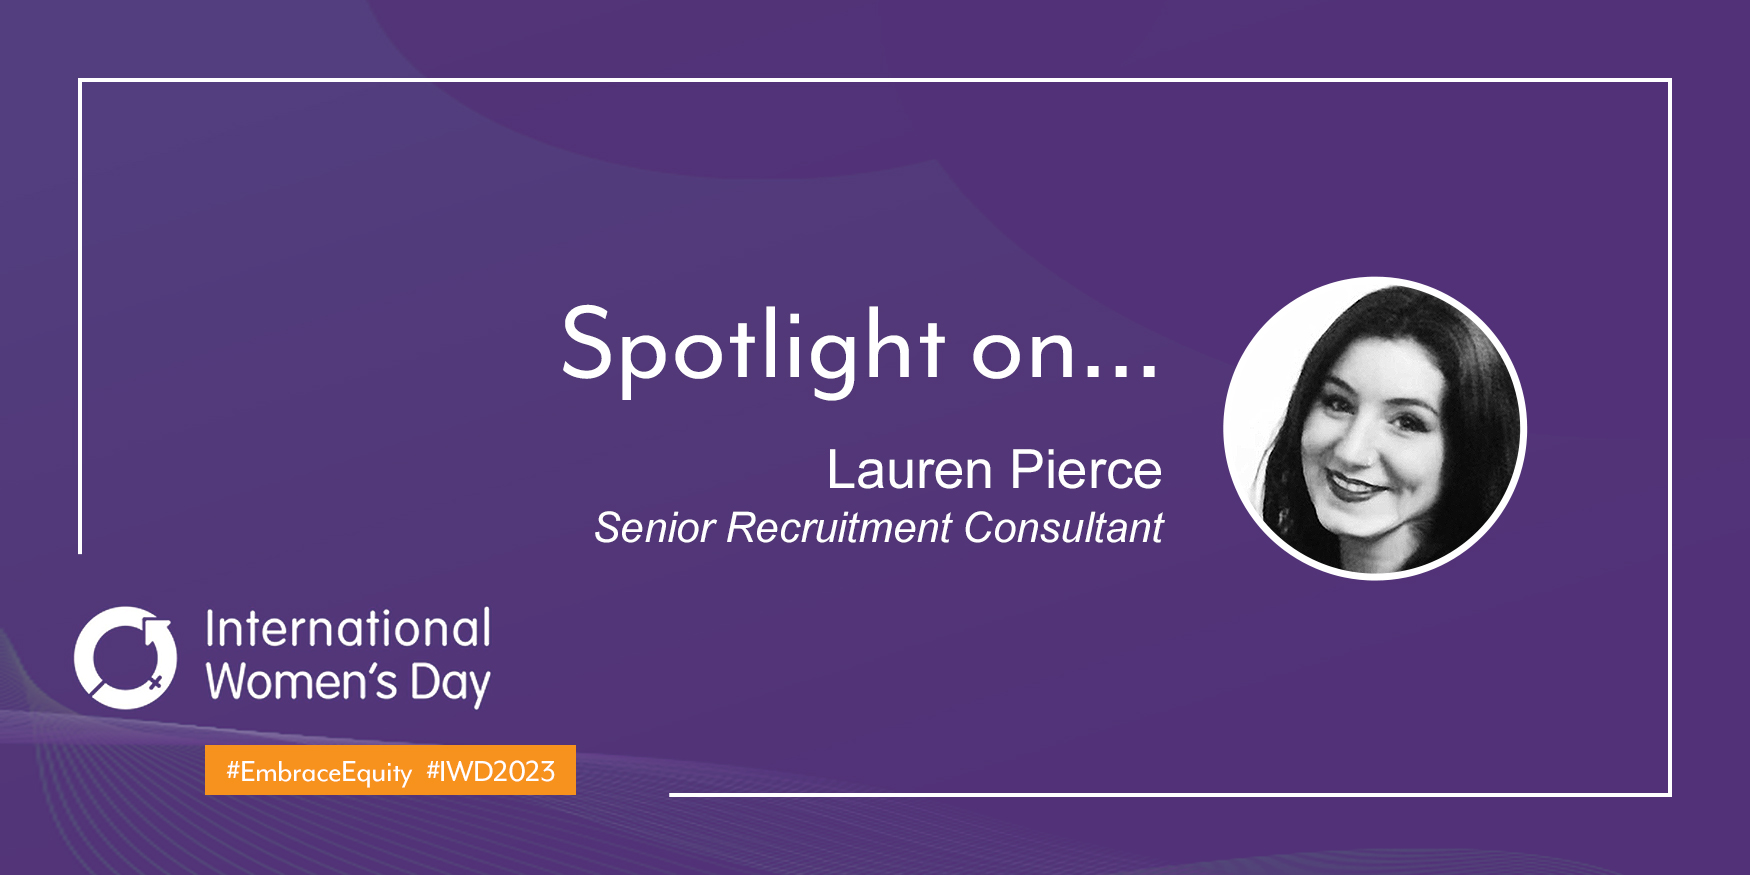 Lauren Pierce, Senior Recruitment Consultant at Elgin White